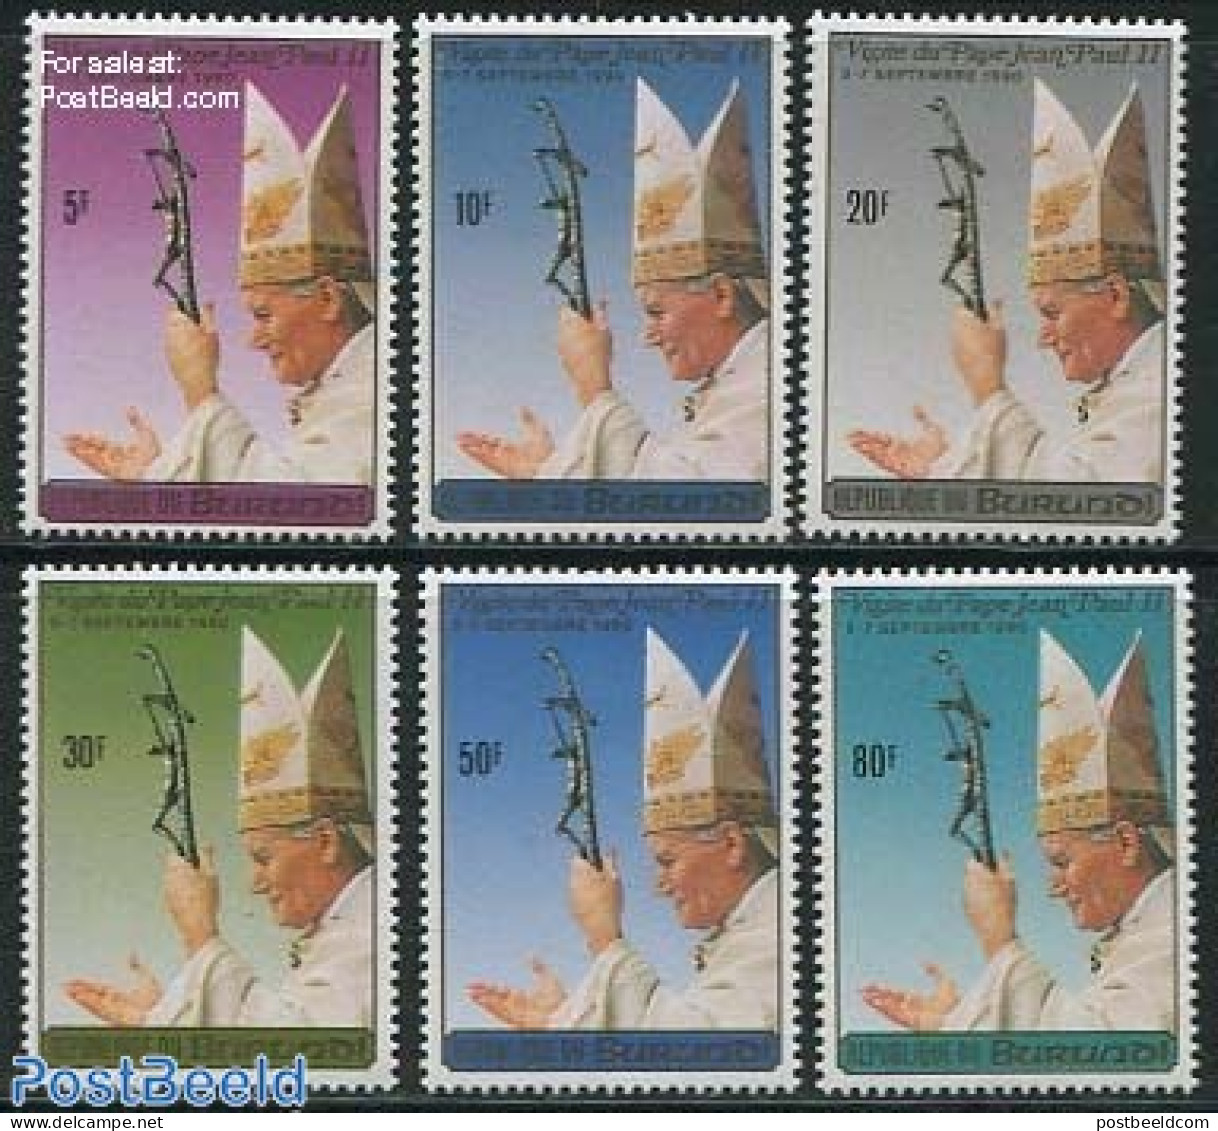 Burundi 1990 Popes Visit 6v, Mint NH, Religion - Pope - Religion - Päpste